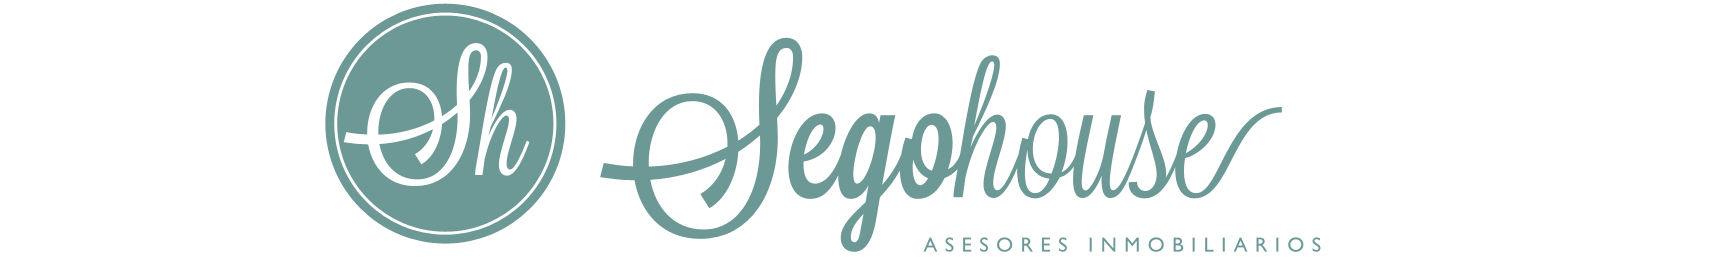 Inmobiliaria Segohouse su agencia de confianza. SEGOHOUSE en Segovia